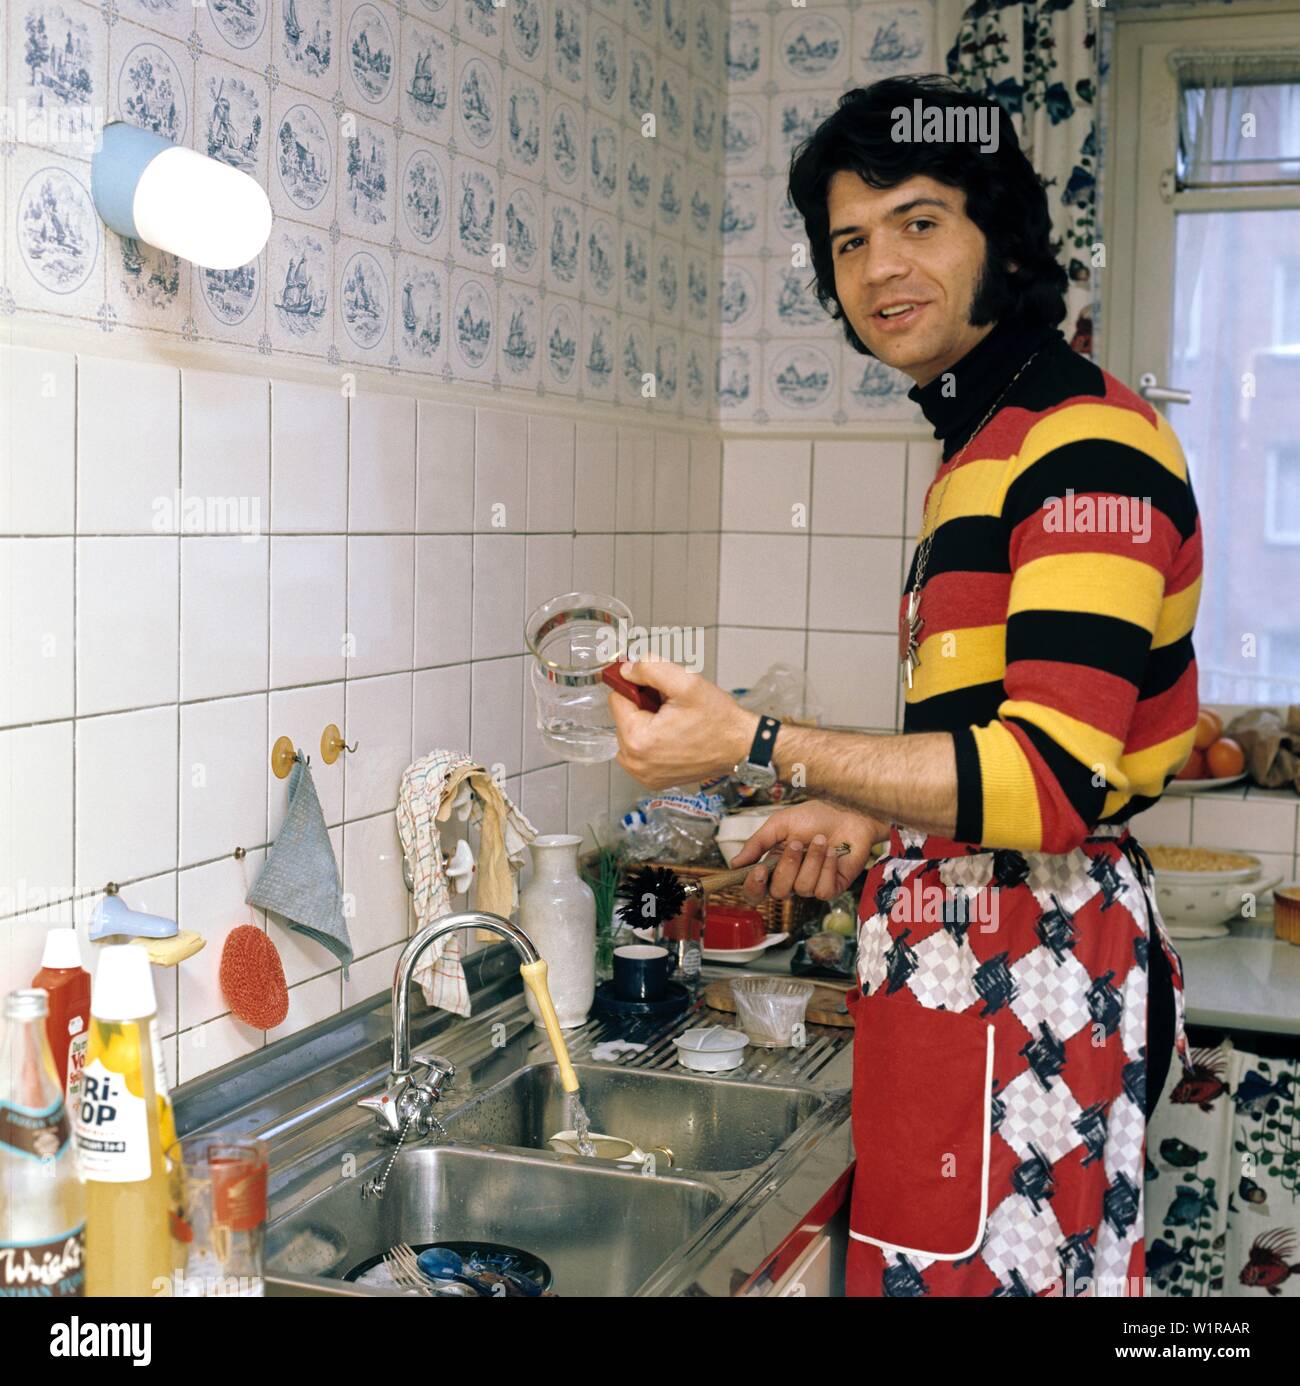 Schlagerstar Costa Cordalis privat zuhause beim Kochen. Costa Cordalis cooking in his private kitchen. Stock Photo